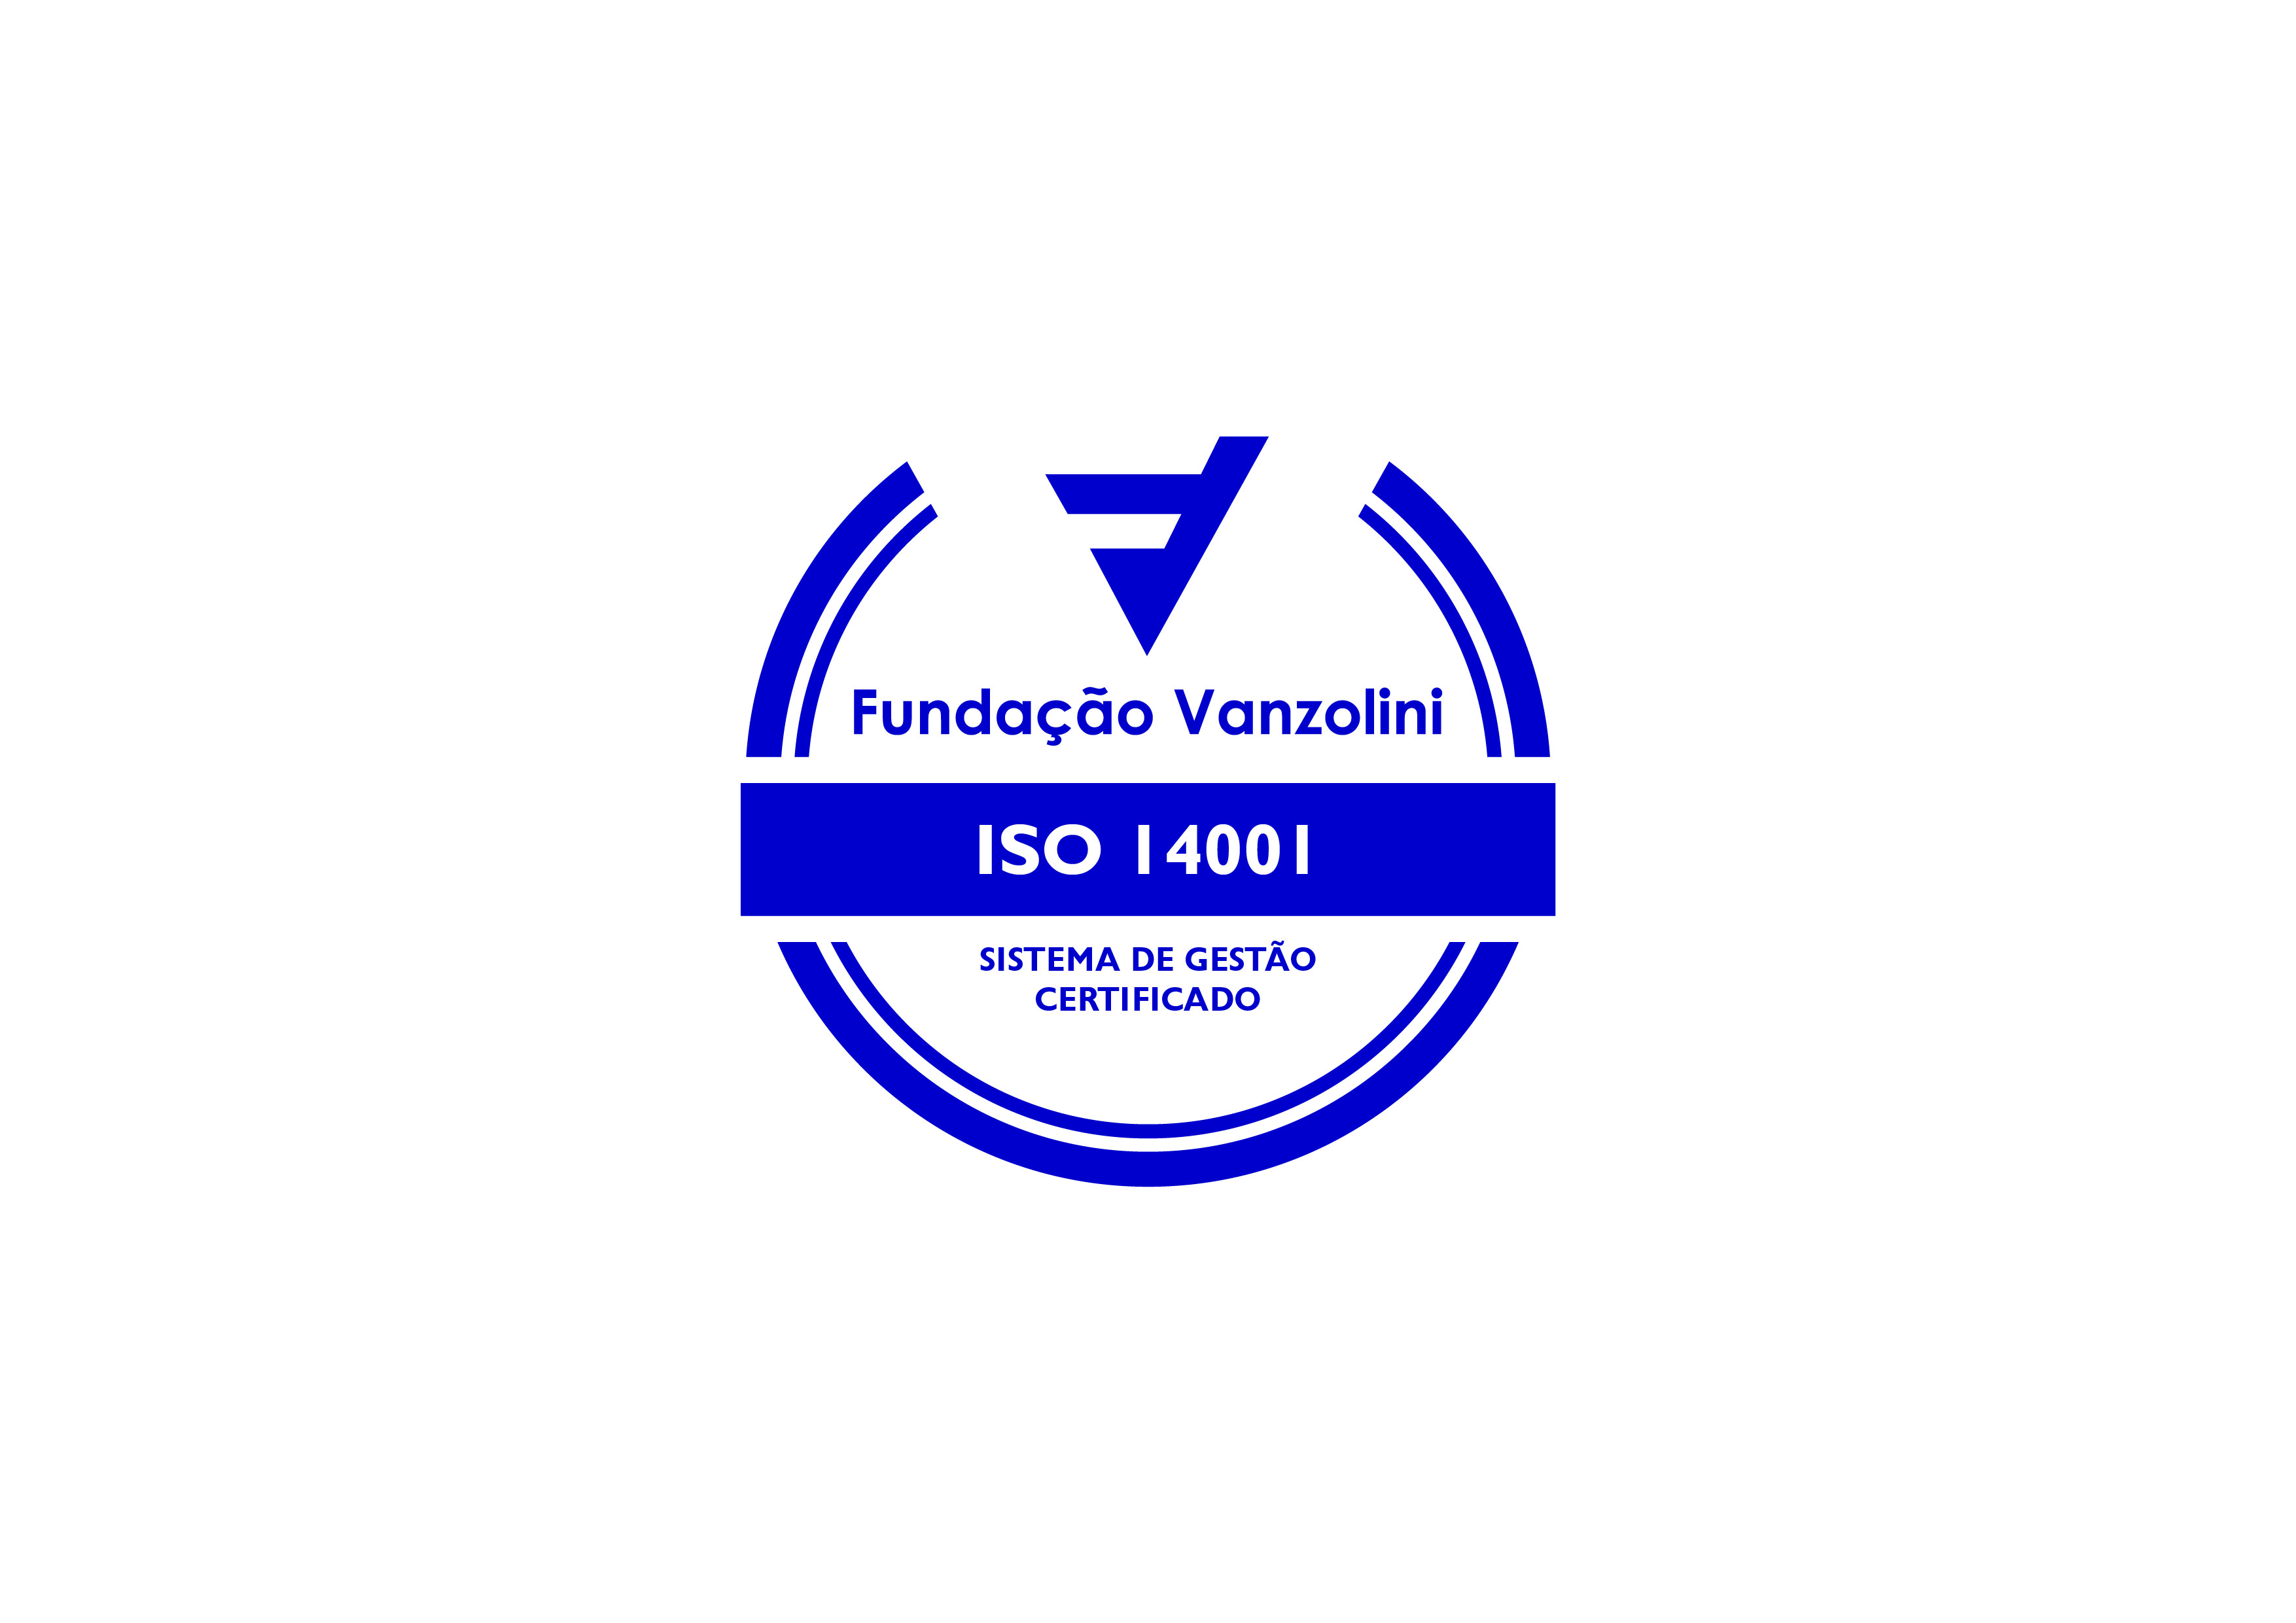 Fundação Vanzolini NBR ISO 14001:2015 Sistema de Gestão Ambiental, certificado SGA-1868